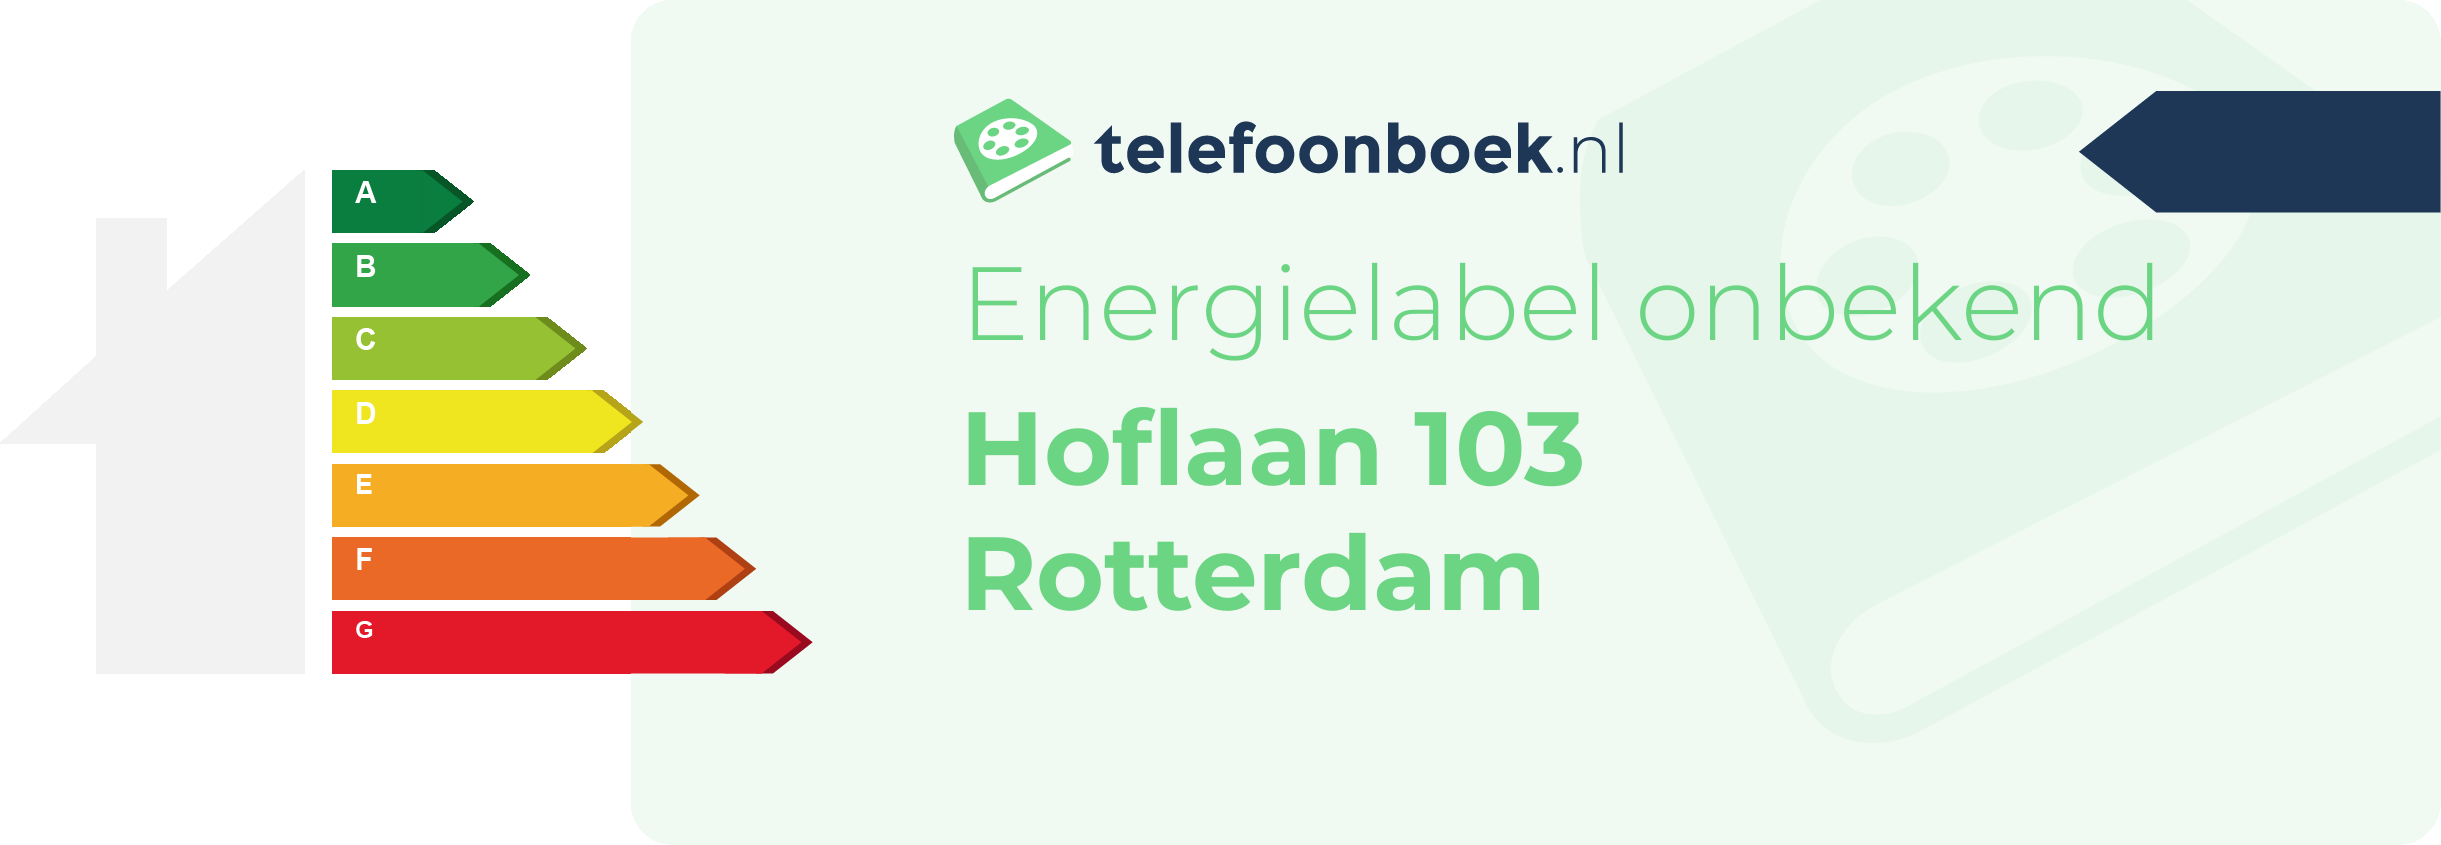 Energielabel Hoflaan 103 Rotterdam